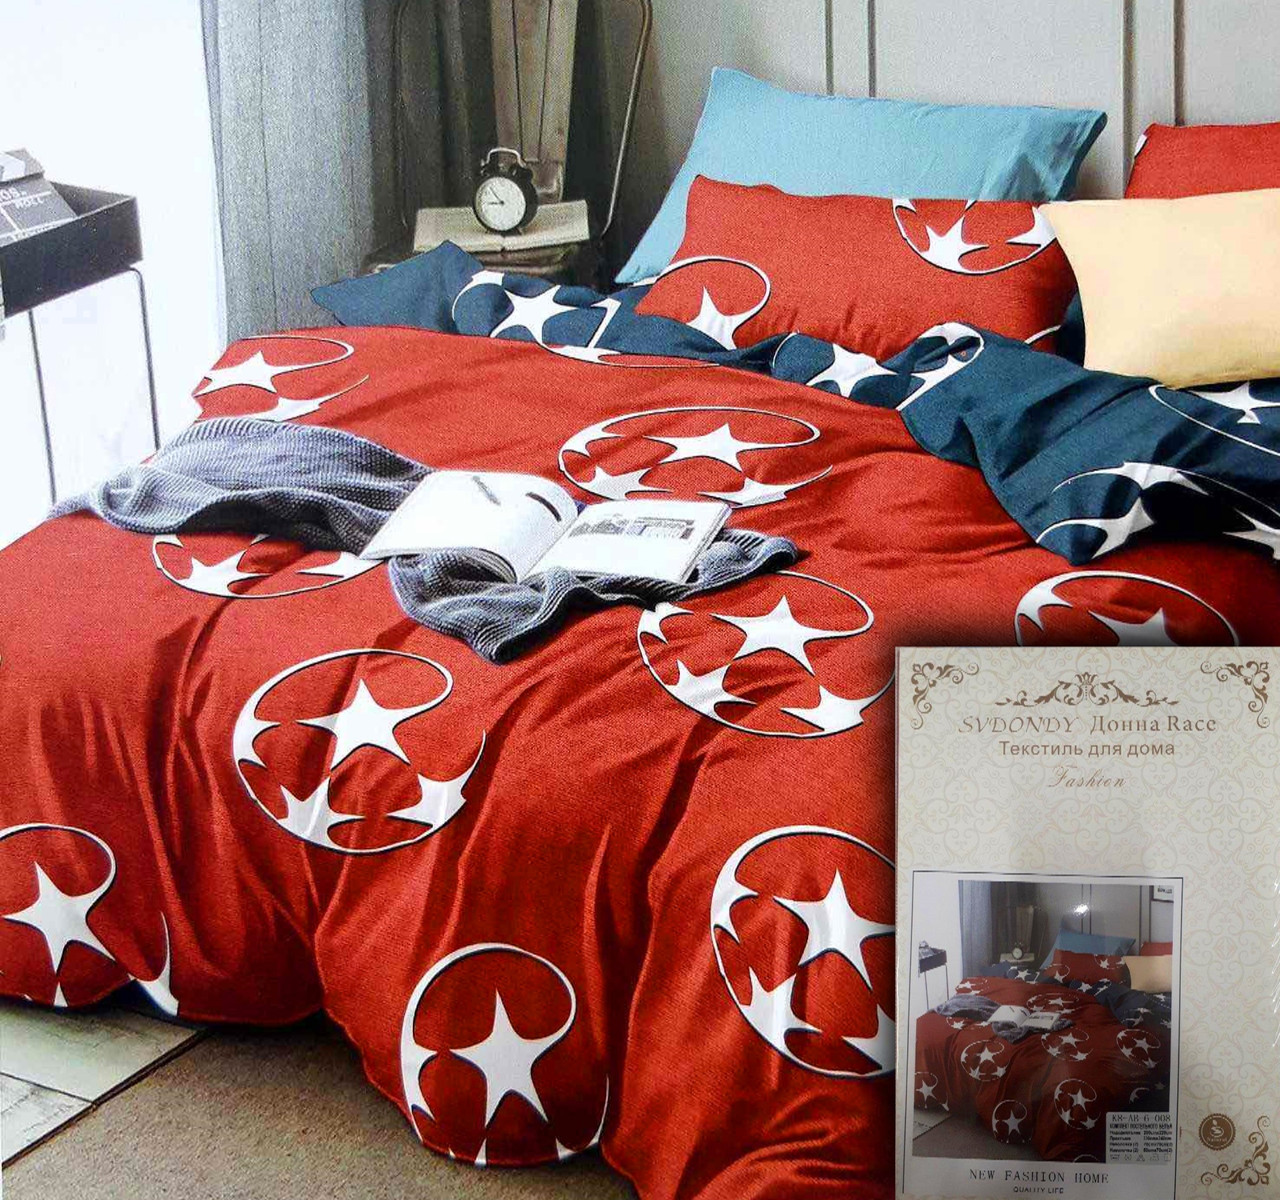 Комплект постельного белья со Звездами ТМ Донна Race, размер Евро, тка